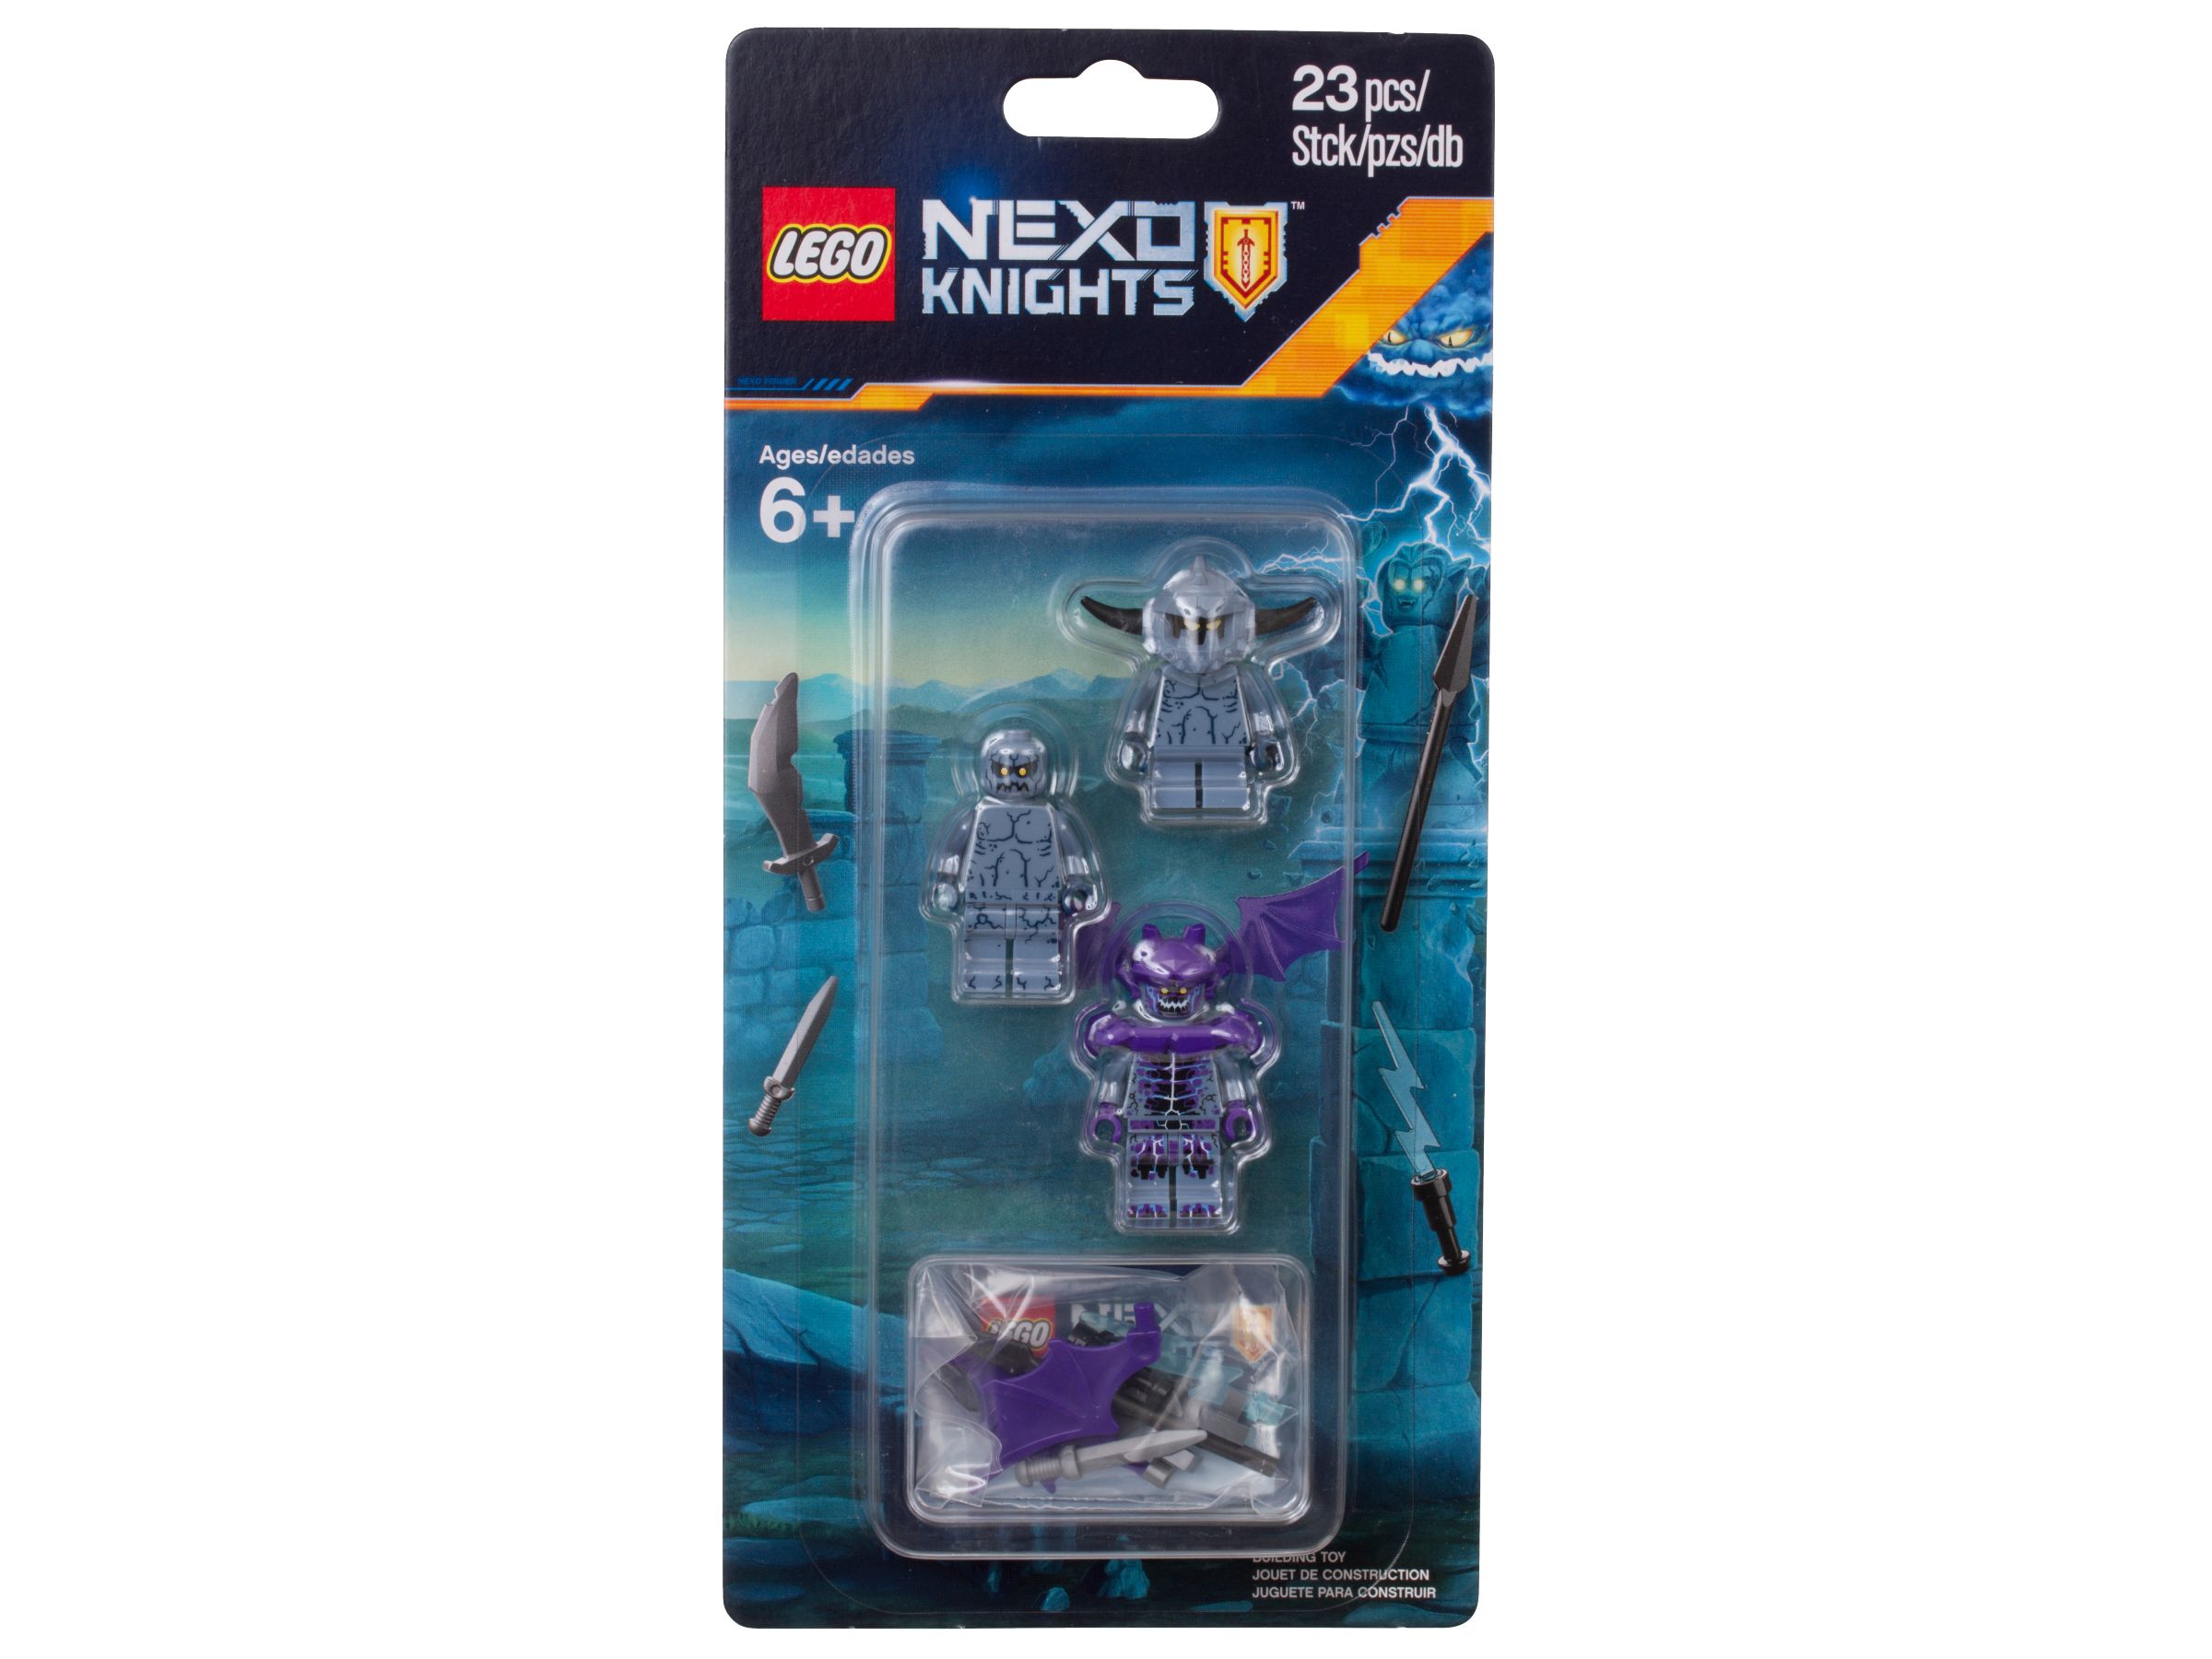 LEGO Nexo Knights 853677 LEGO® NEXO KNIGHTS™ Felsmonster-Zubehörset 2017 LEGO_853677_alt1.jpg